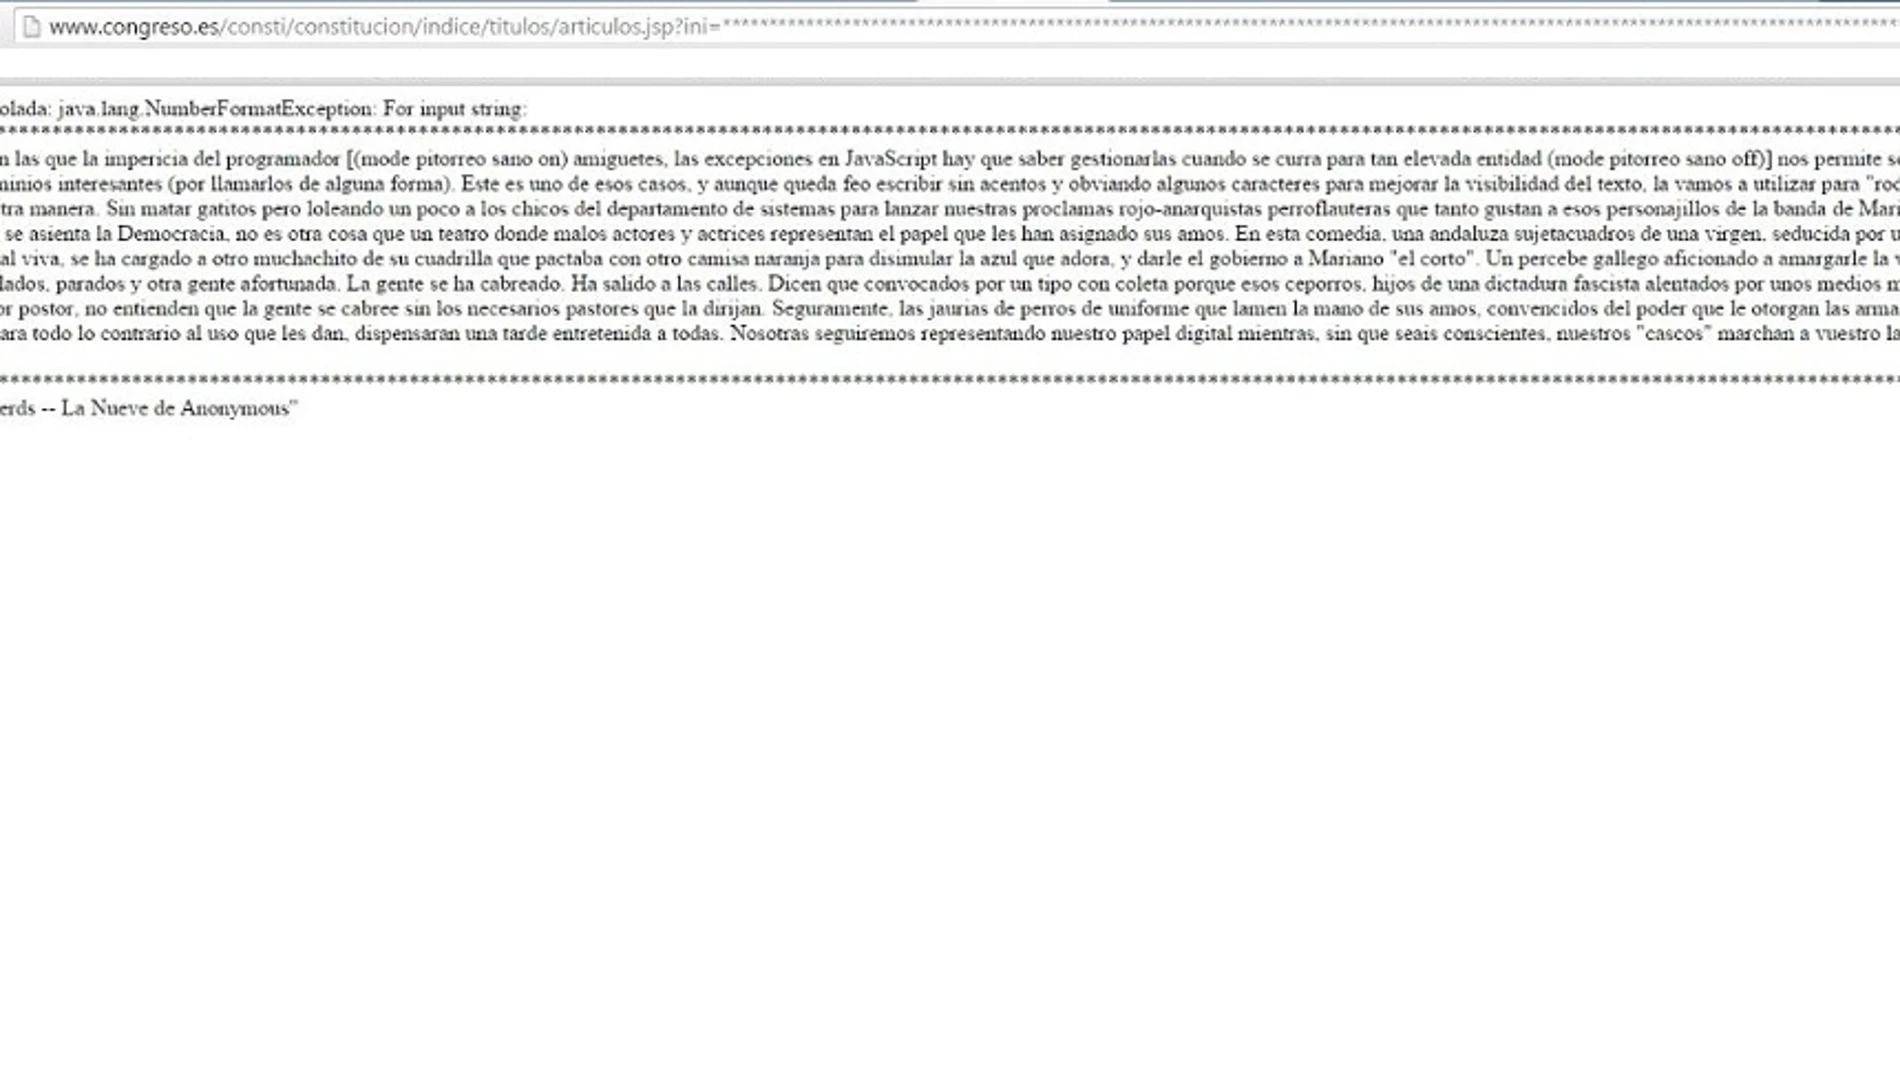 Captura de pantalla de la página web del Congreso de los Diputados durante su hackeo